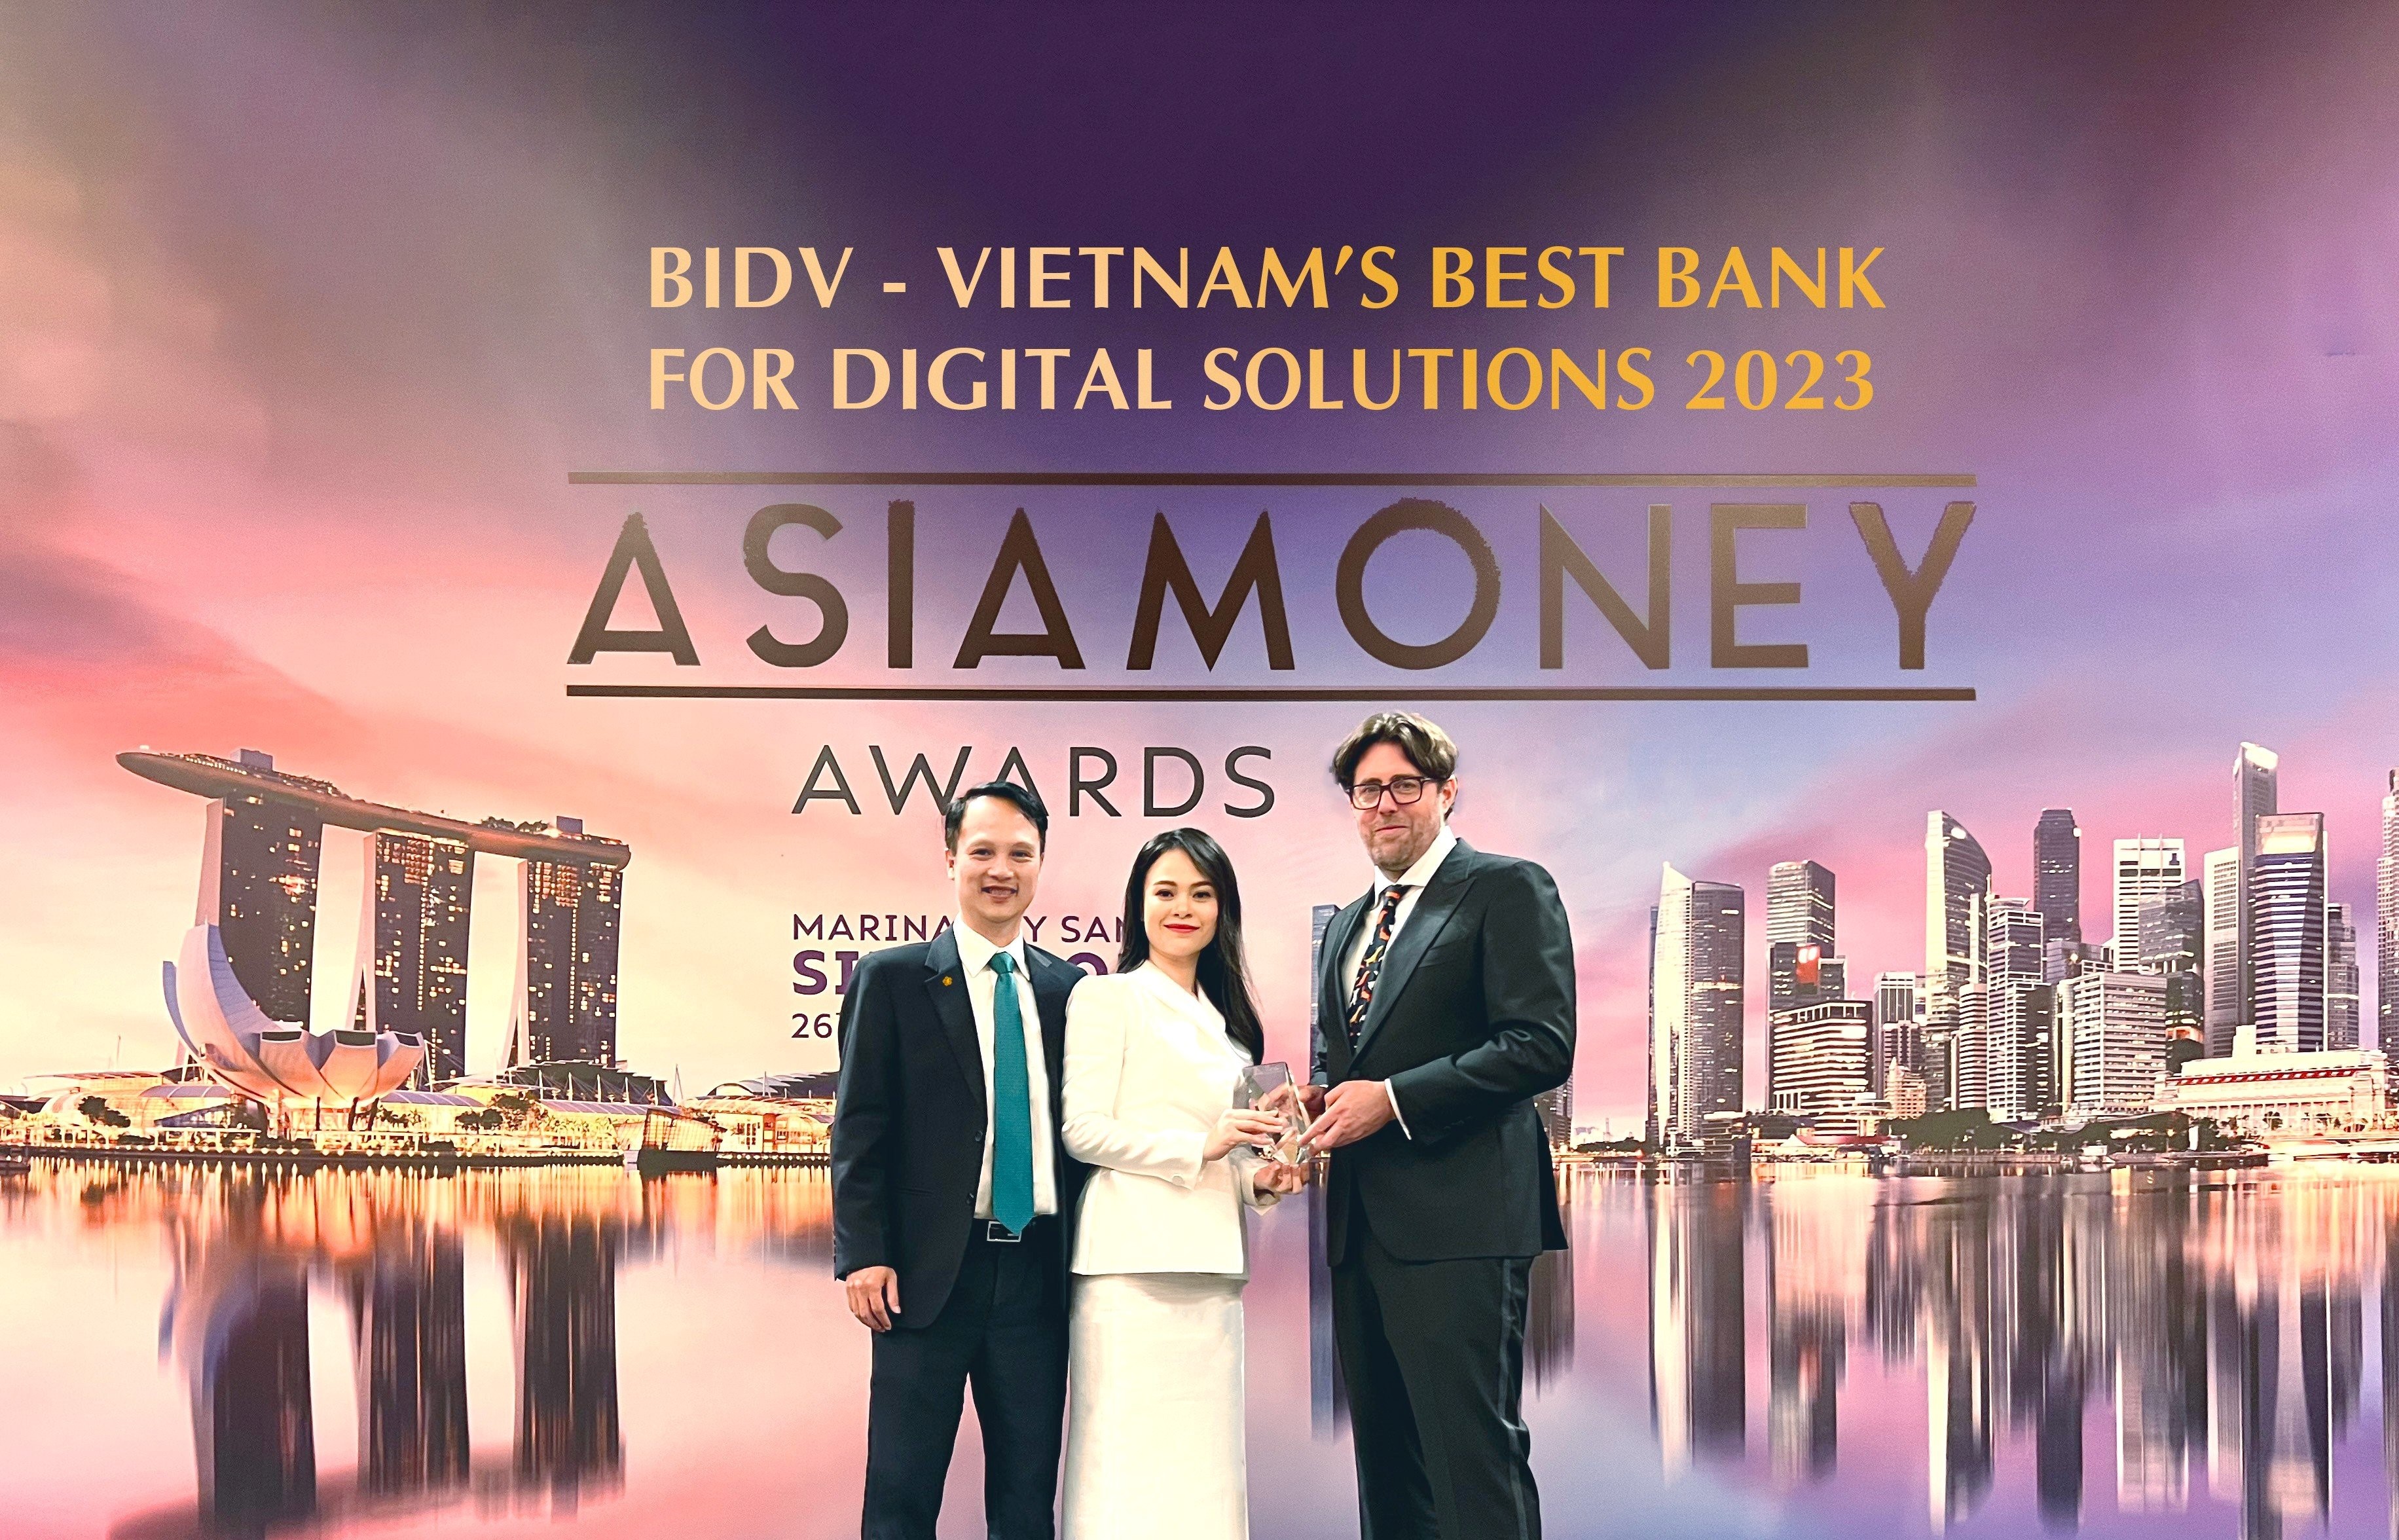 Đại diện BIDV nhận giải “ Ngân hàng cung cấp giải pháp số hàng đầu Việt Nam” từ tạp chí Asiamoney